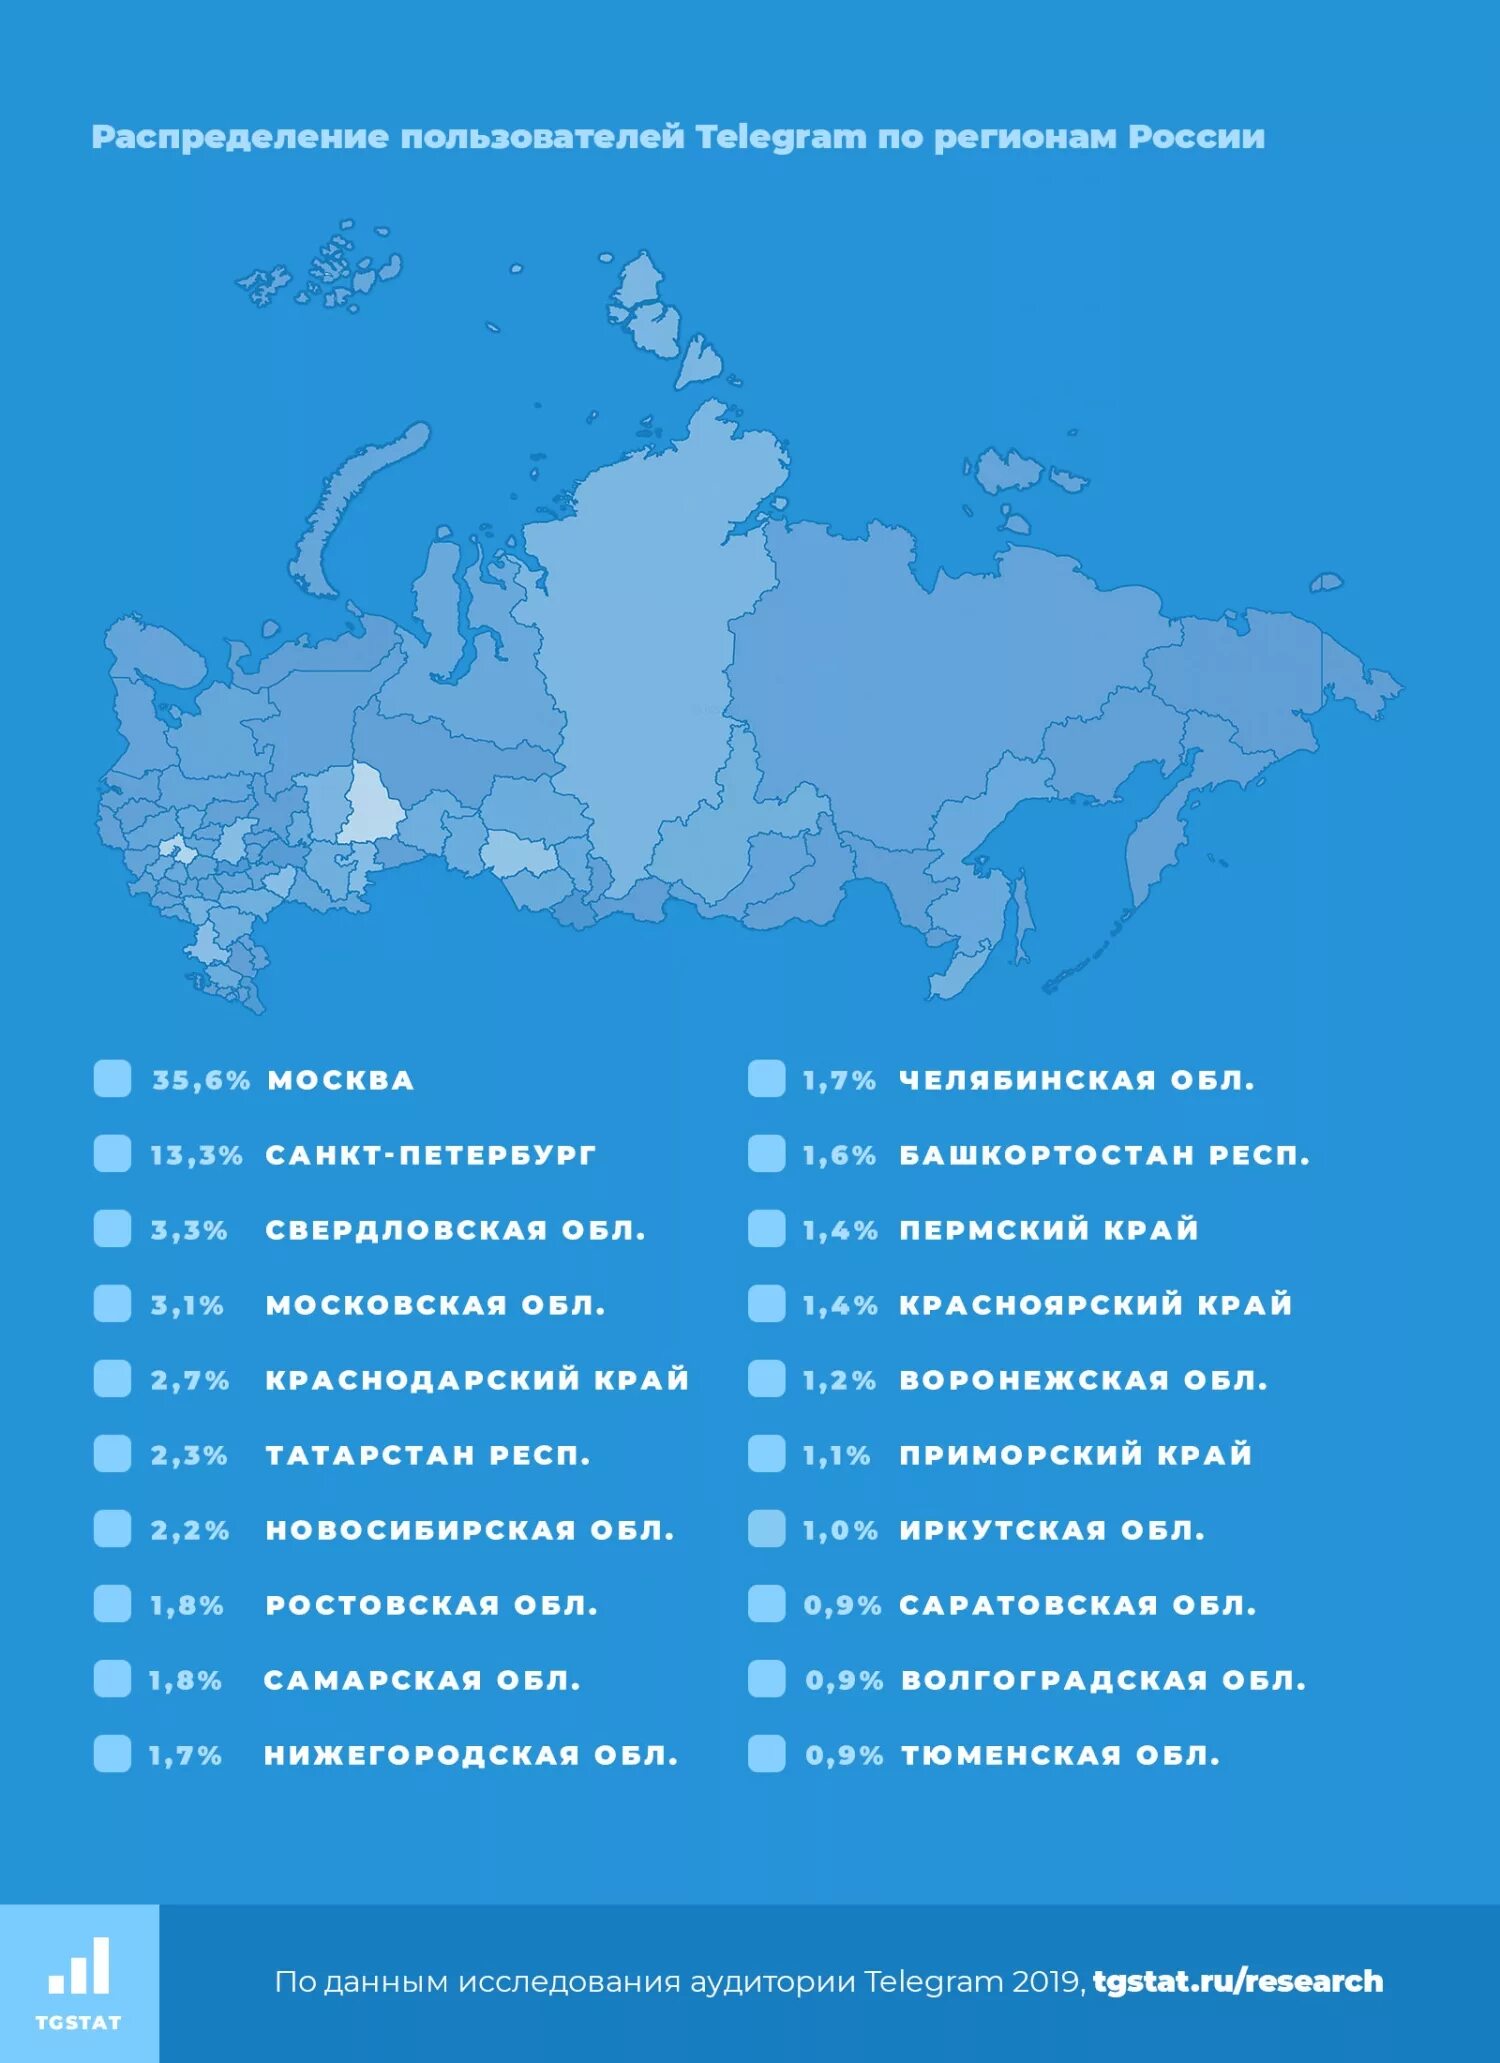 Телеграмм статистика по странам. Пользователи телеграмм по странам. Количество пользователей телеграмм по странам. Популярность телеграмма по странам.